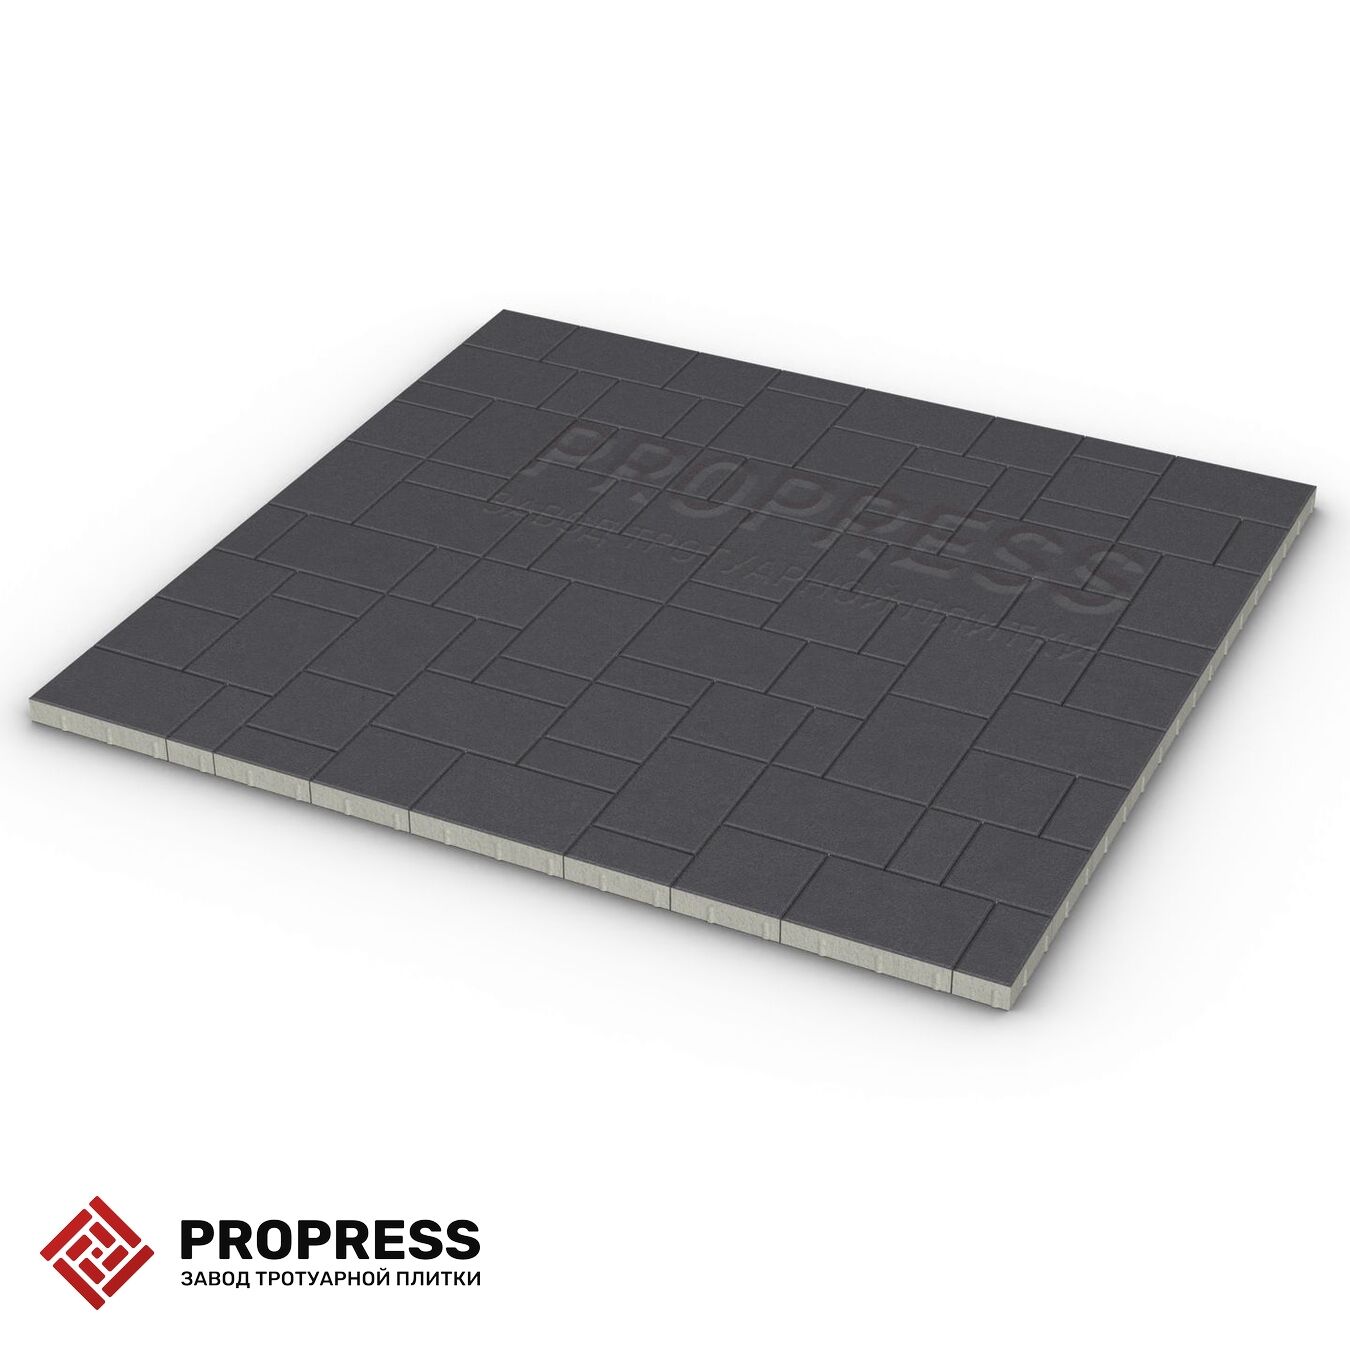 Тротуарная плитка Пропресс Лэндхаус Чёрный зернистый 40 мм